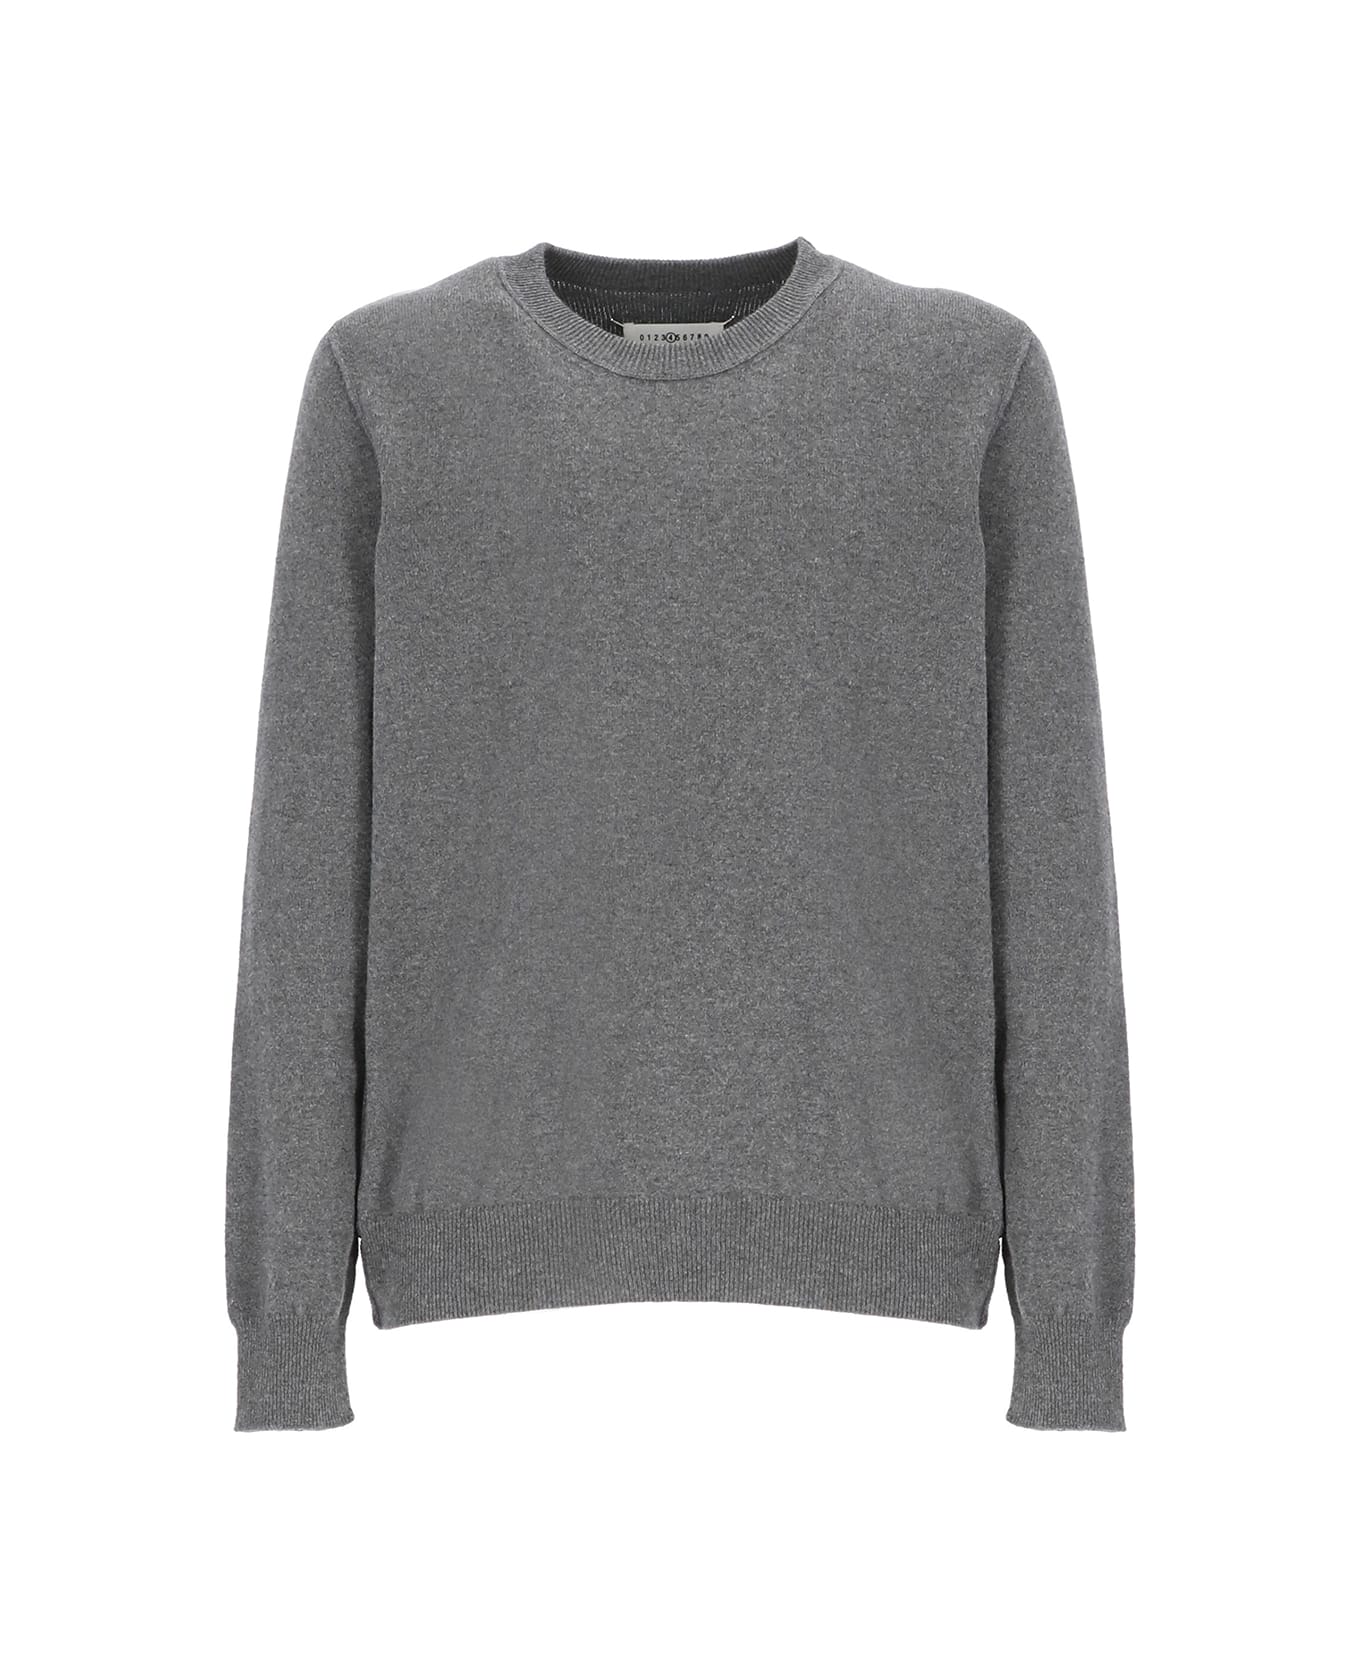 Maison Margiela Cashmere Sweater - Medium Grey ニットウェア